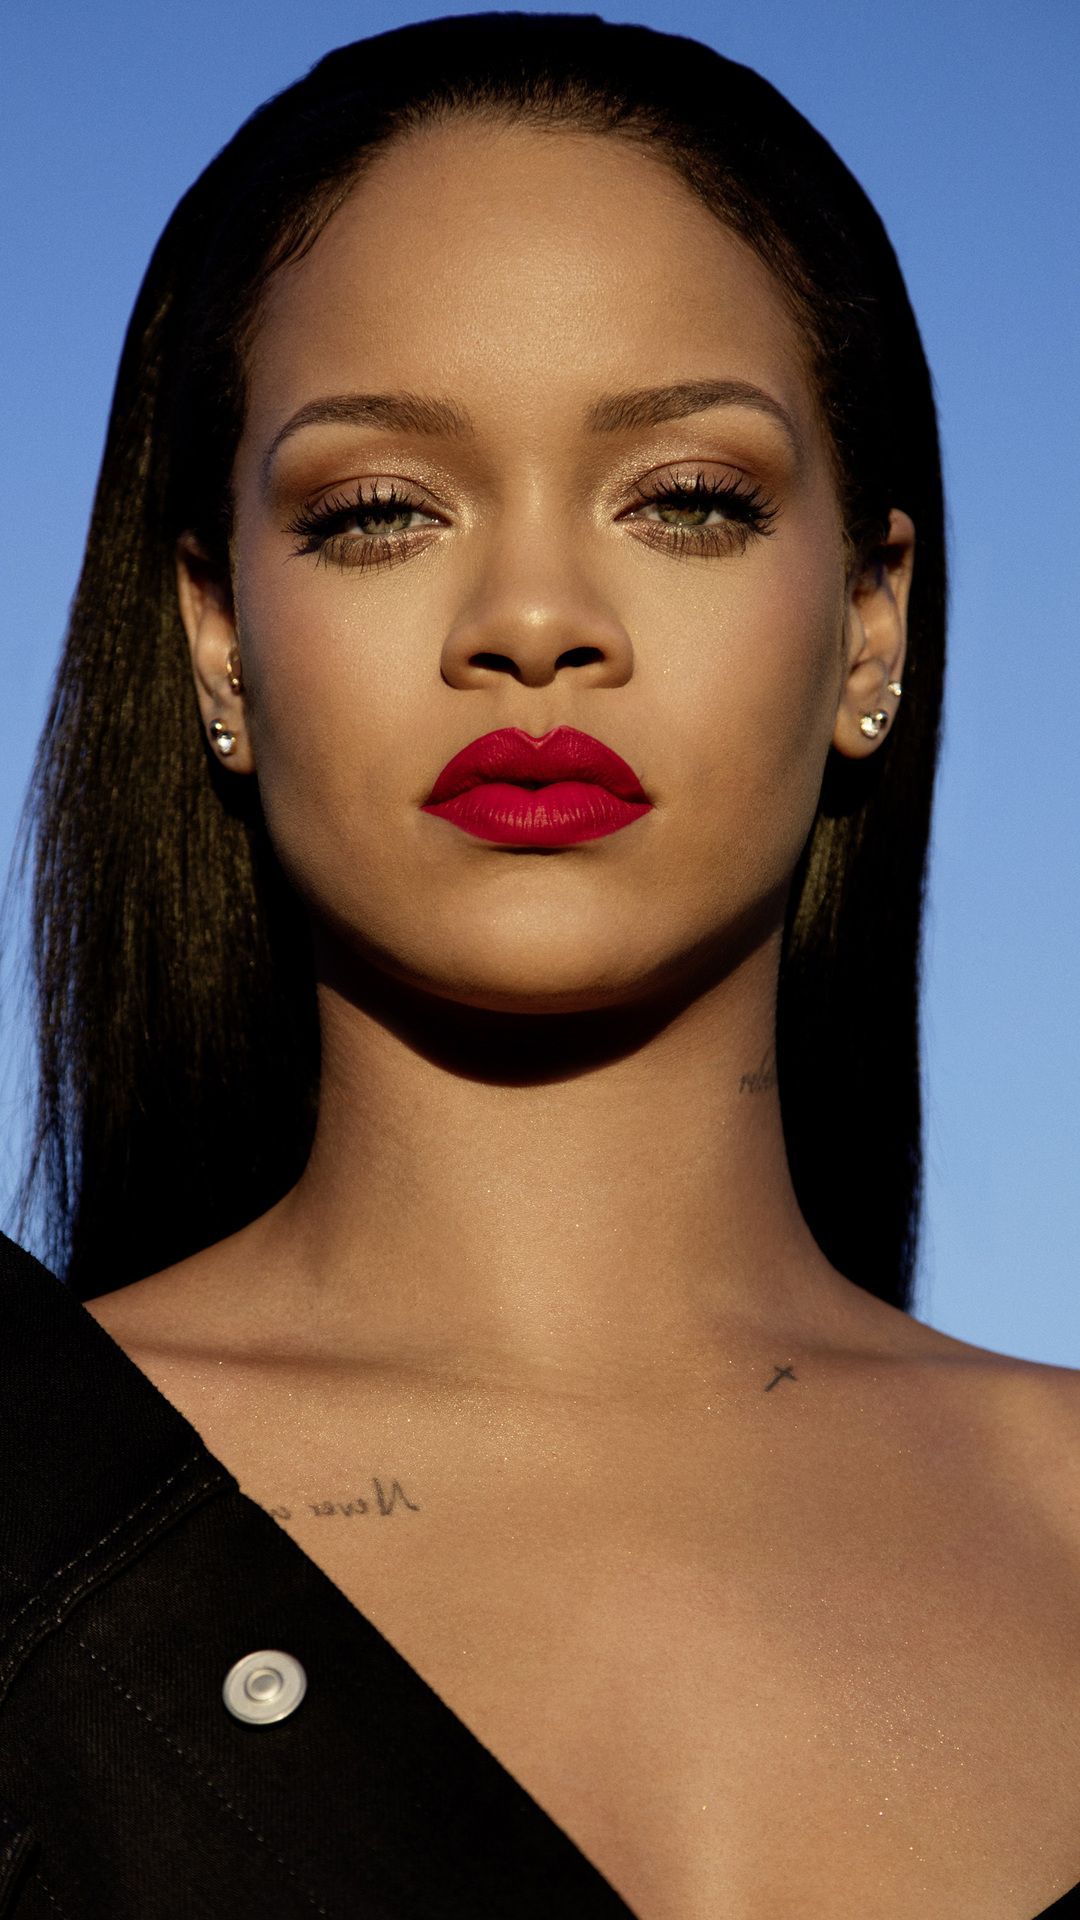  Rihanna wallpaper   Wallery